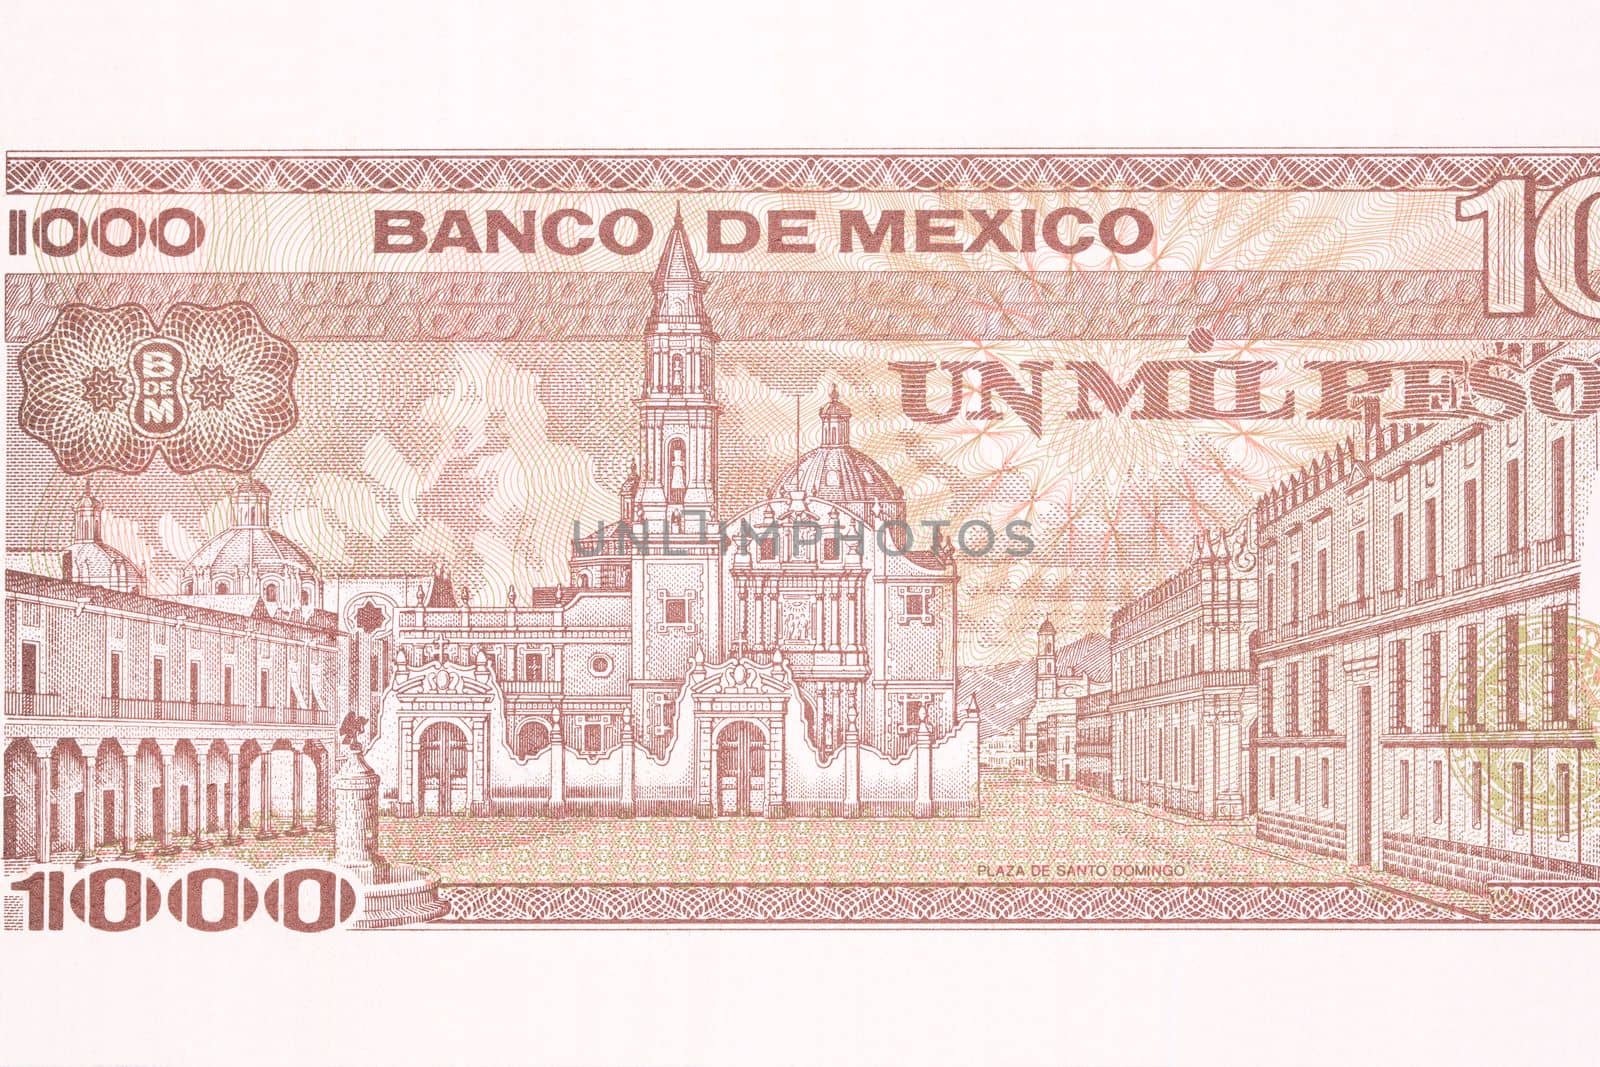 Plaza de Santo Domingo from old Mexican money - Pesos